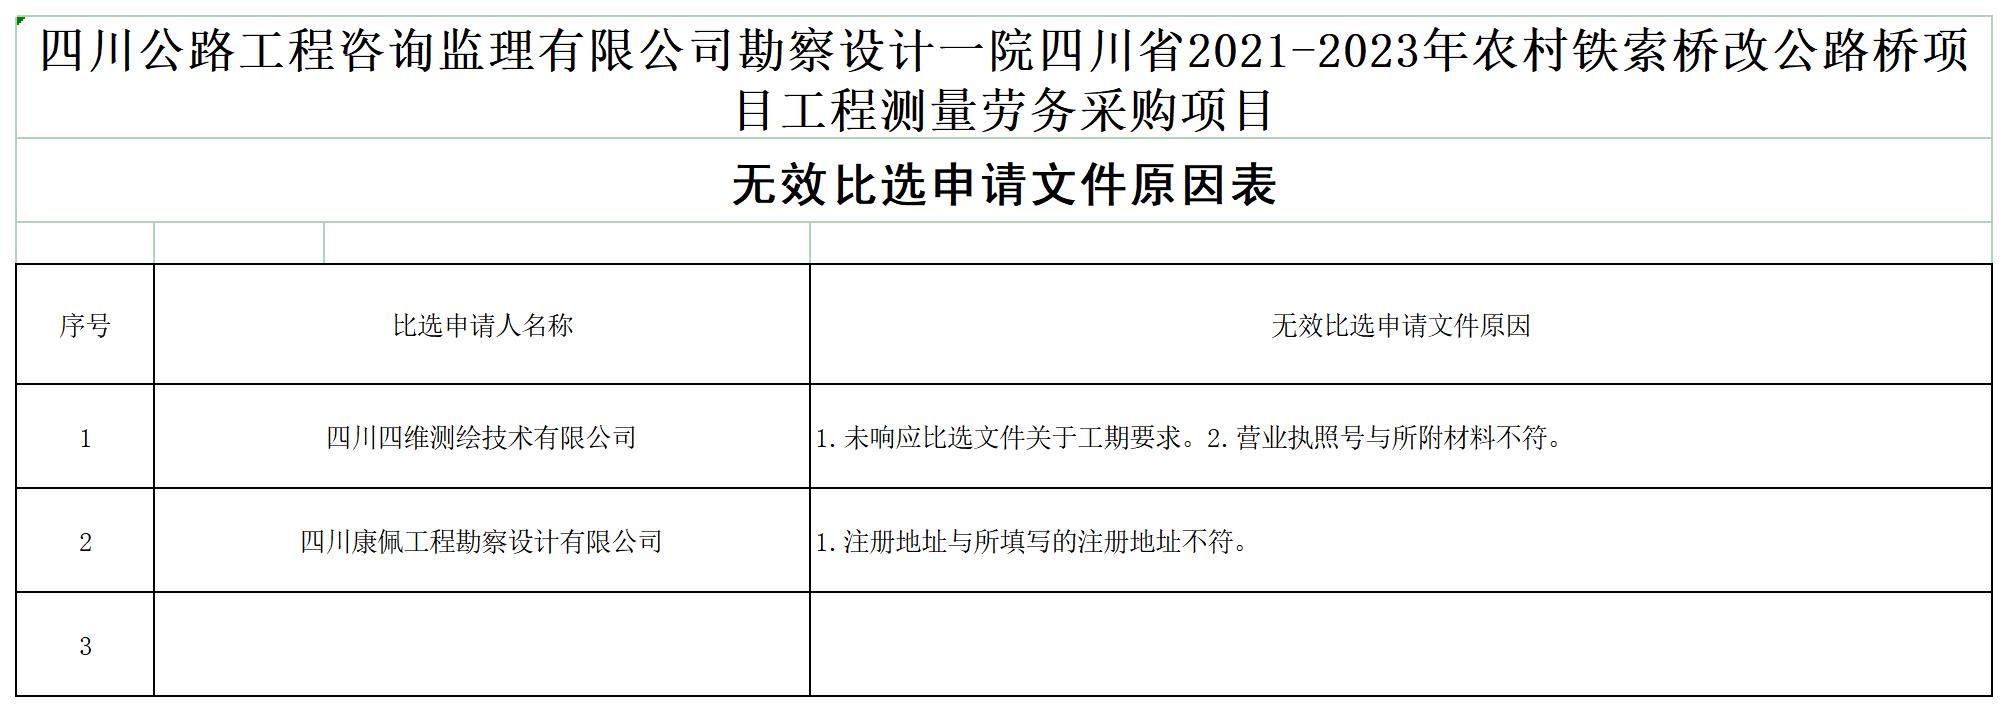 ld乐动·体育（中国）官方网站勘察设计一院四川省2021-2023年农村铁索桥改公路桥项目工程测量劳务采购项目无效文件原因表(1)_A1D7.jpg